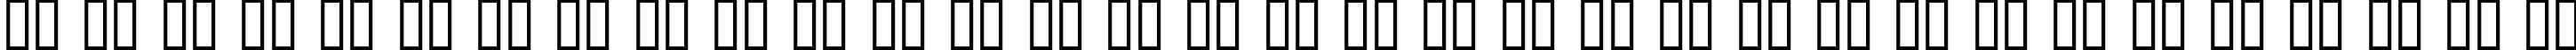 Пример написания русского алфавита шрифтом Road Hoe